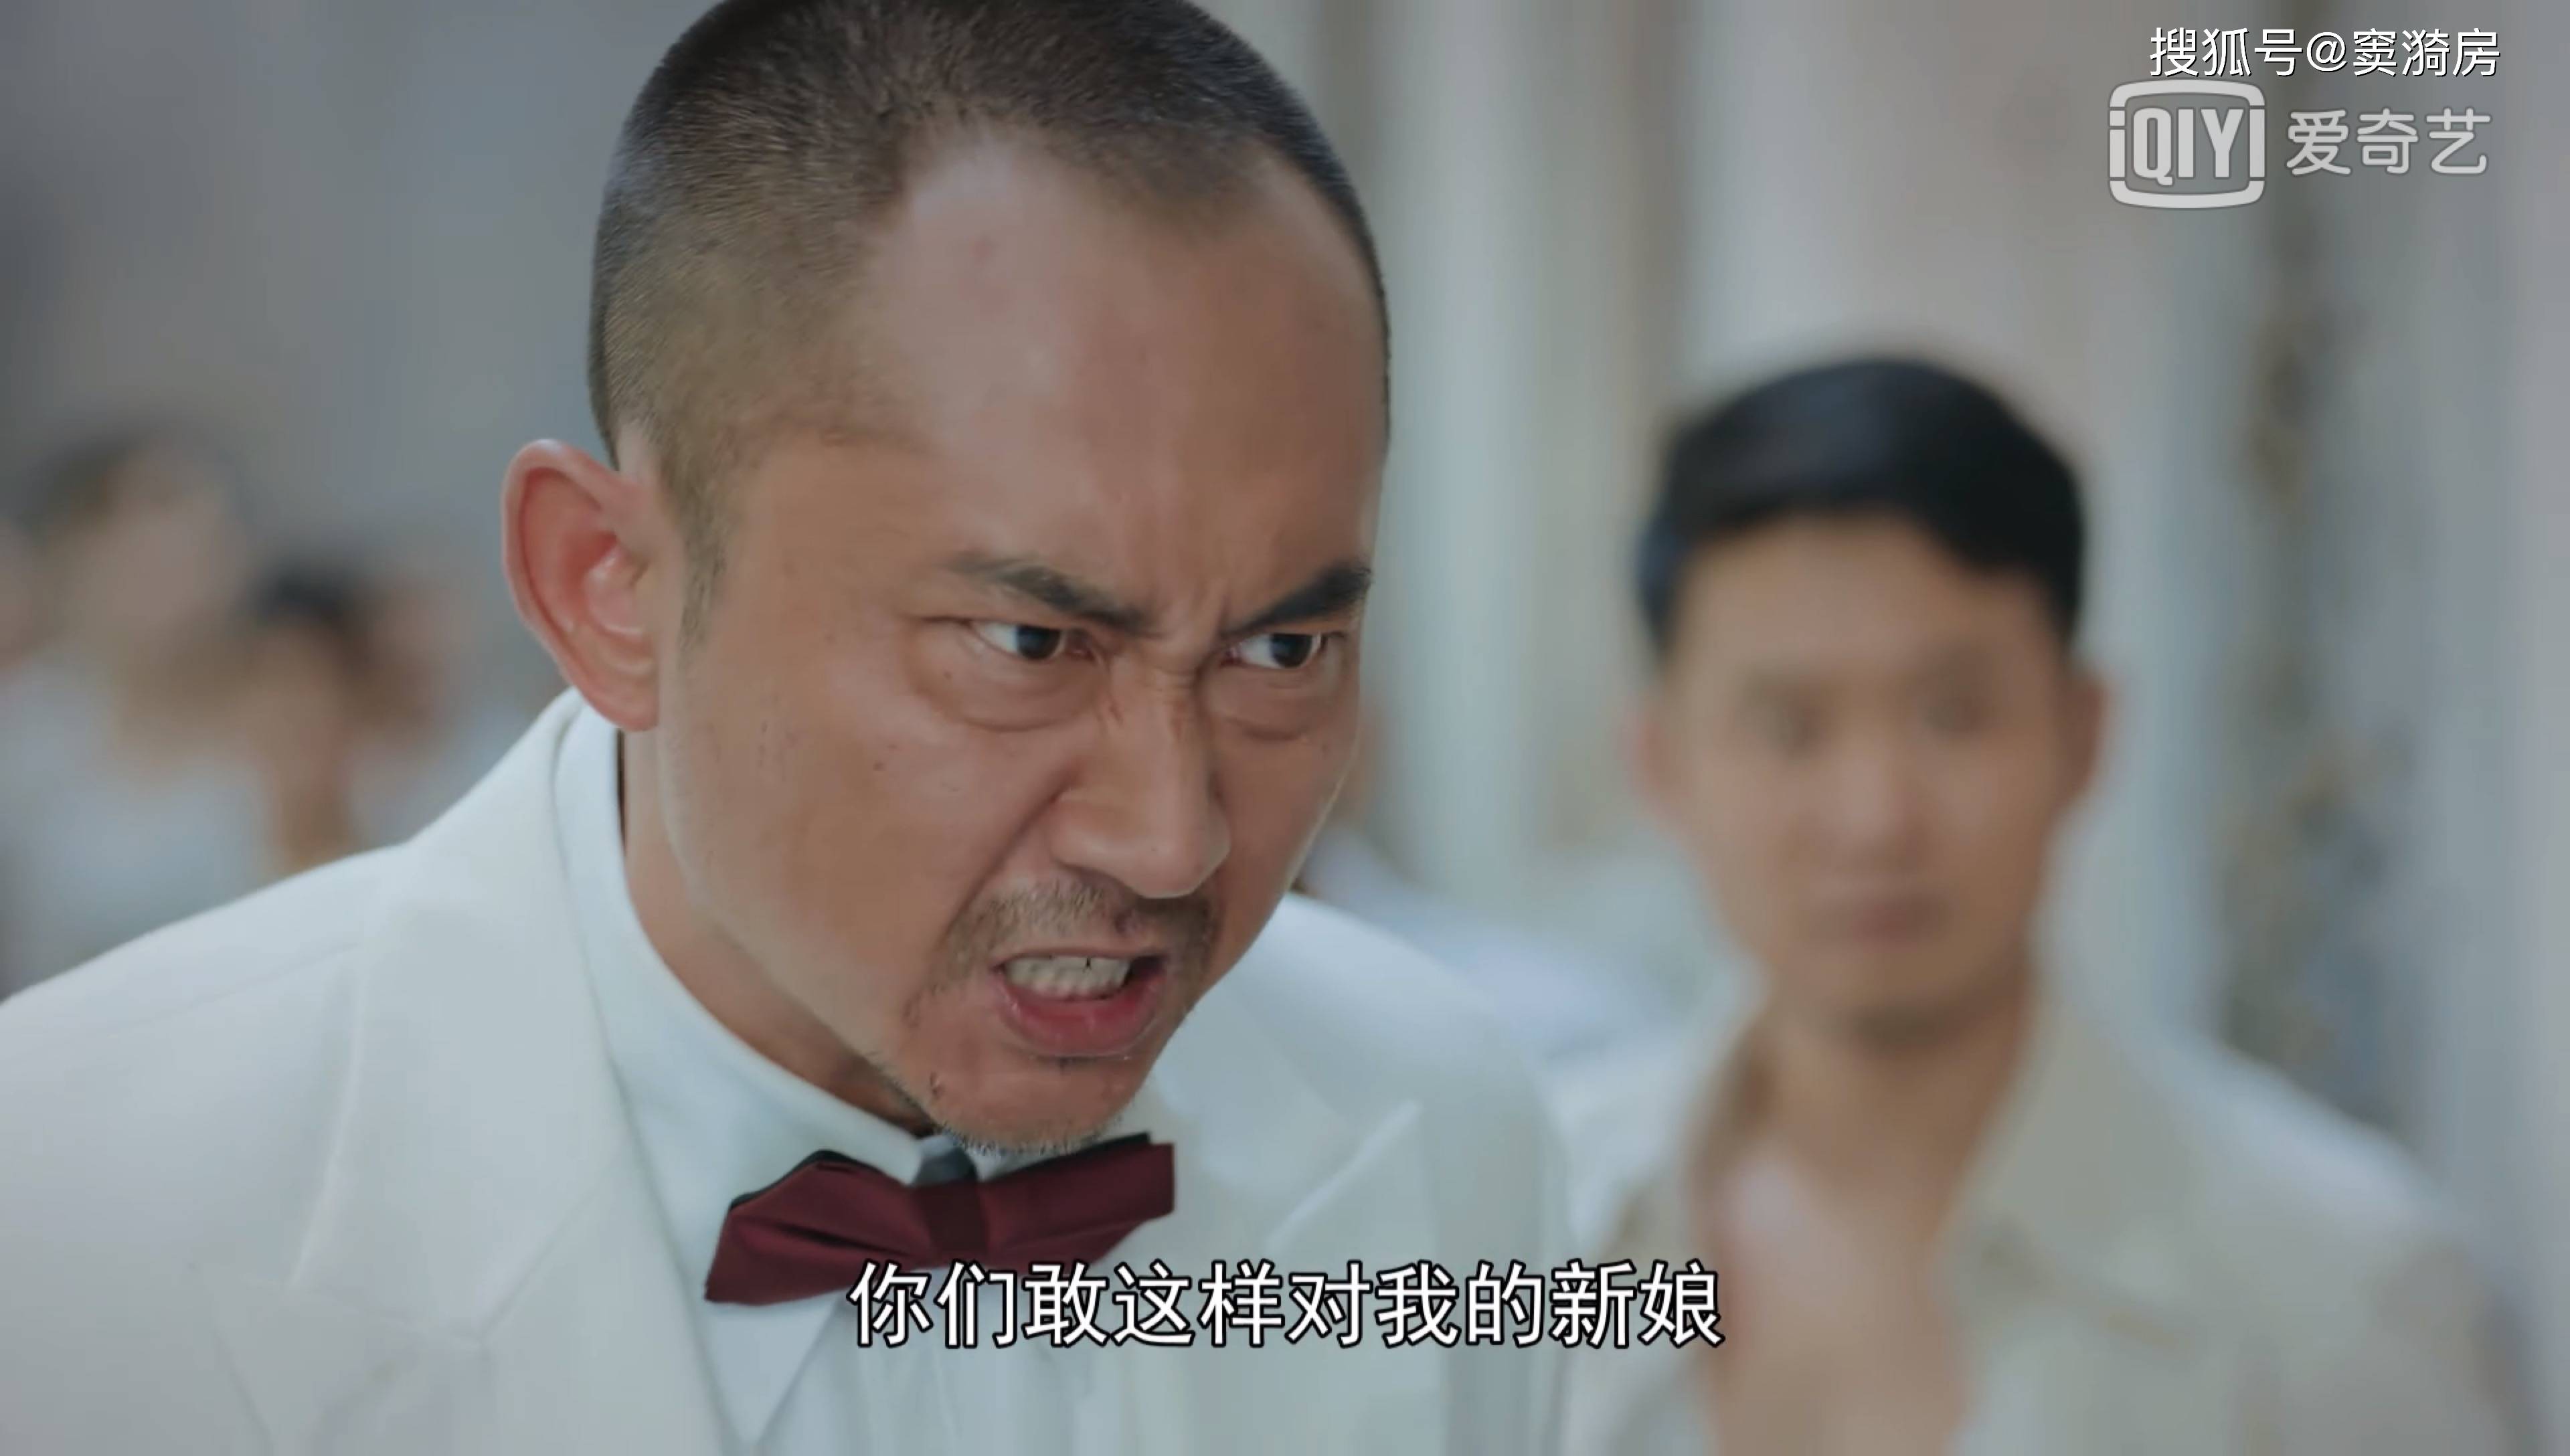 在电视剧小娘惹中,刘一刀可以算是搞笑担当了,这个人很奇怪,他没有